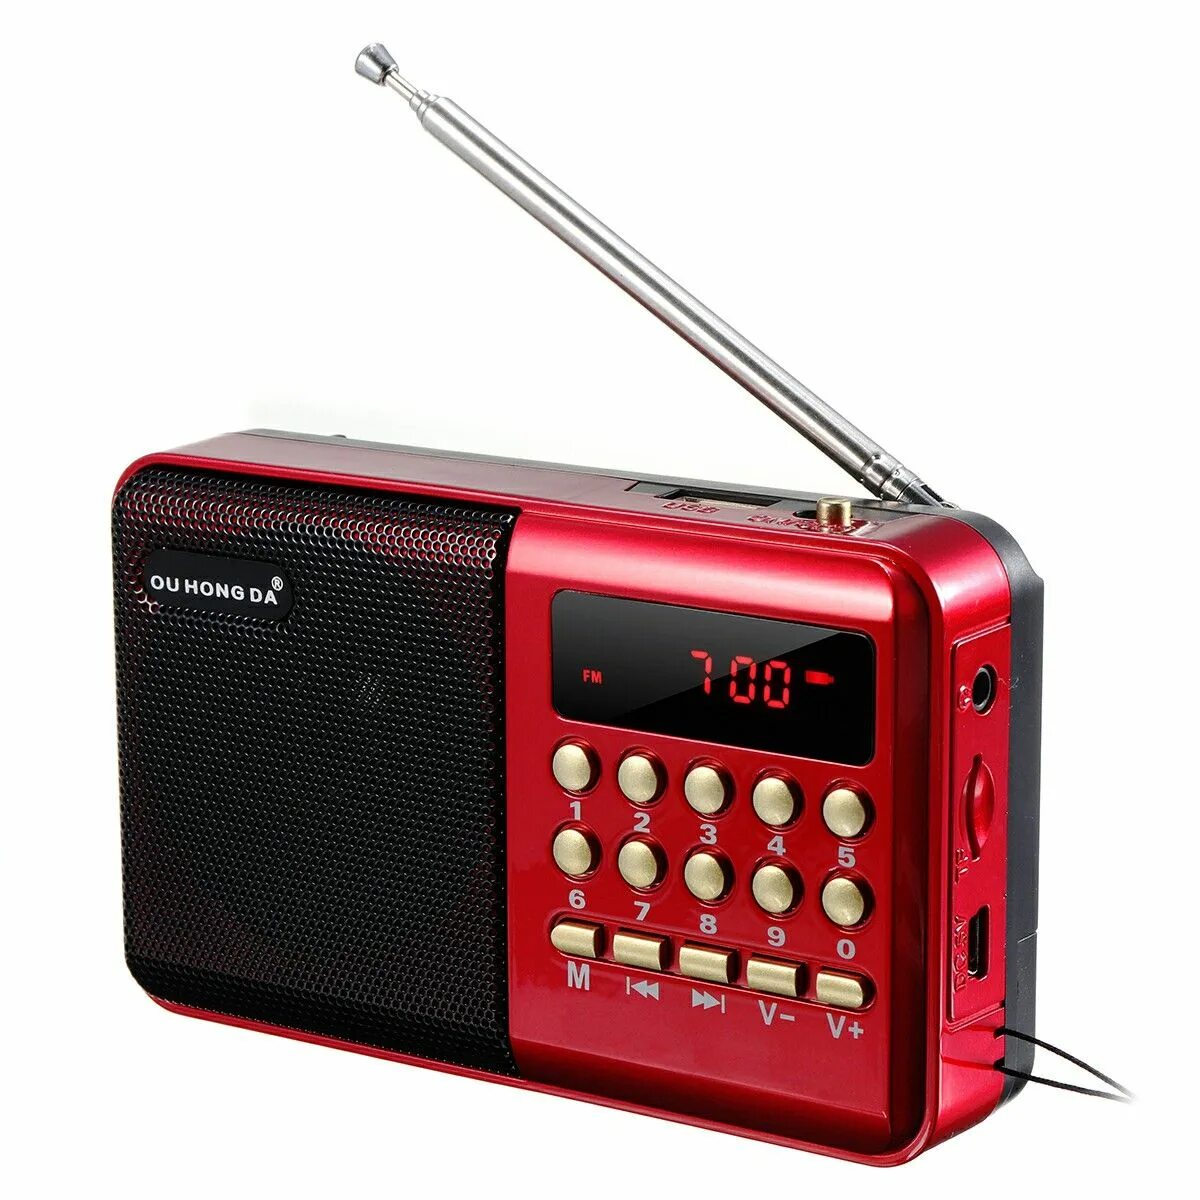 Купить мини радио. Fm-радио портативный карманный мини-радиоприемник. Радиоприёмники мини диджитал ФМ радио Speaker. Радиоприемник Thomson rt303. Карманный радиоприемник ФМ цифровой.